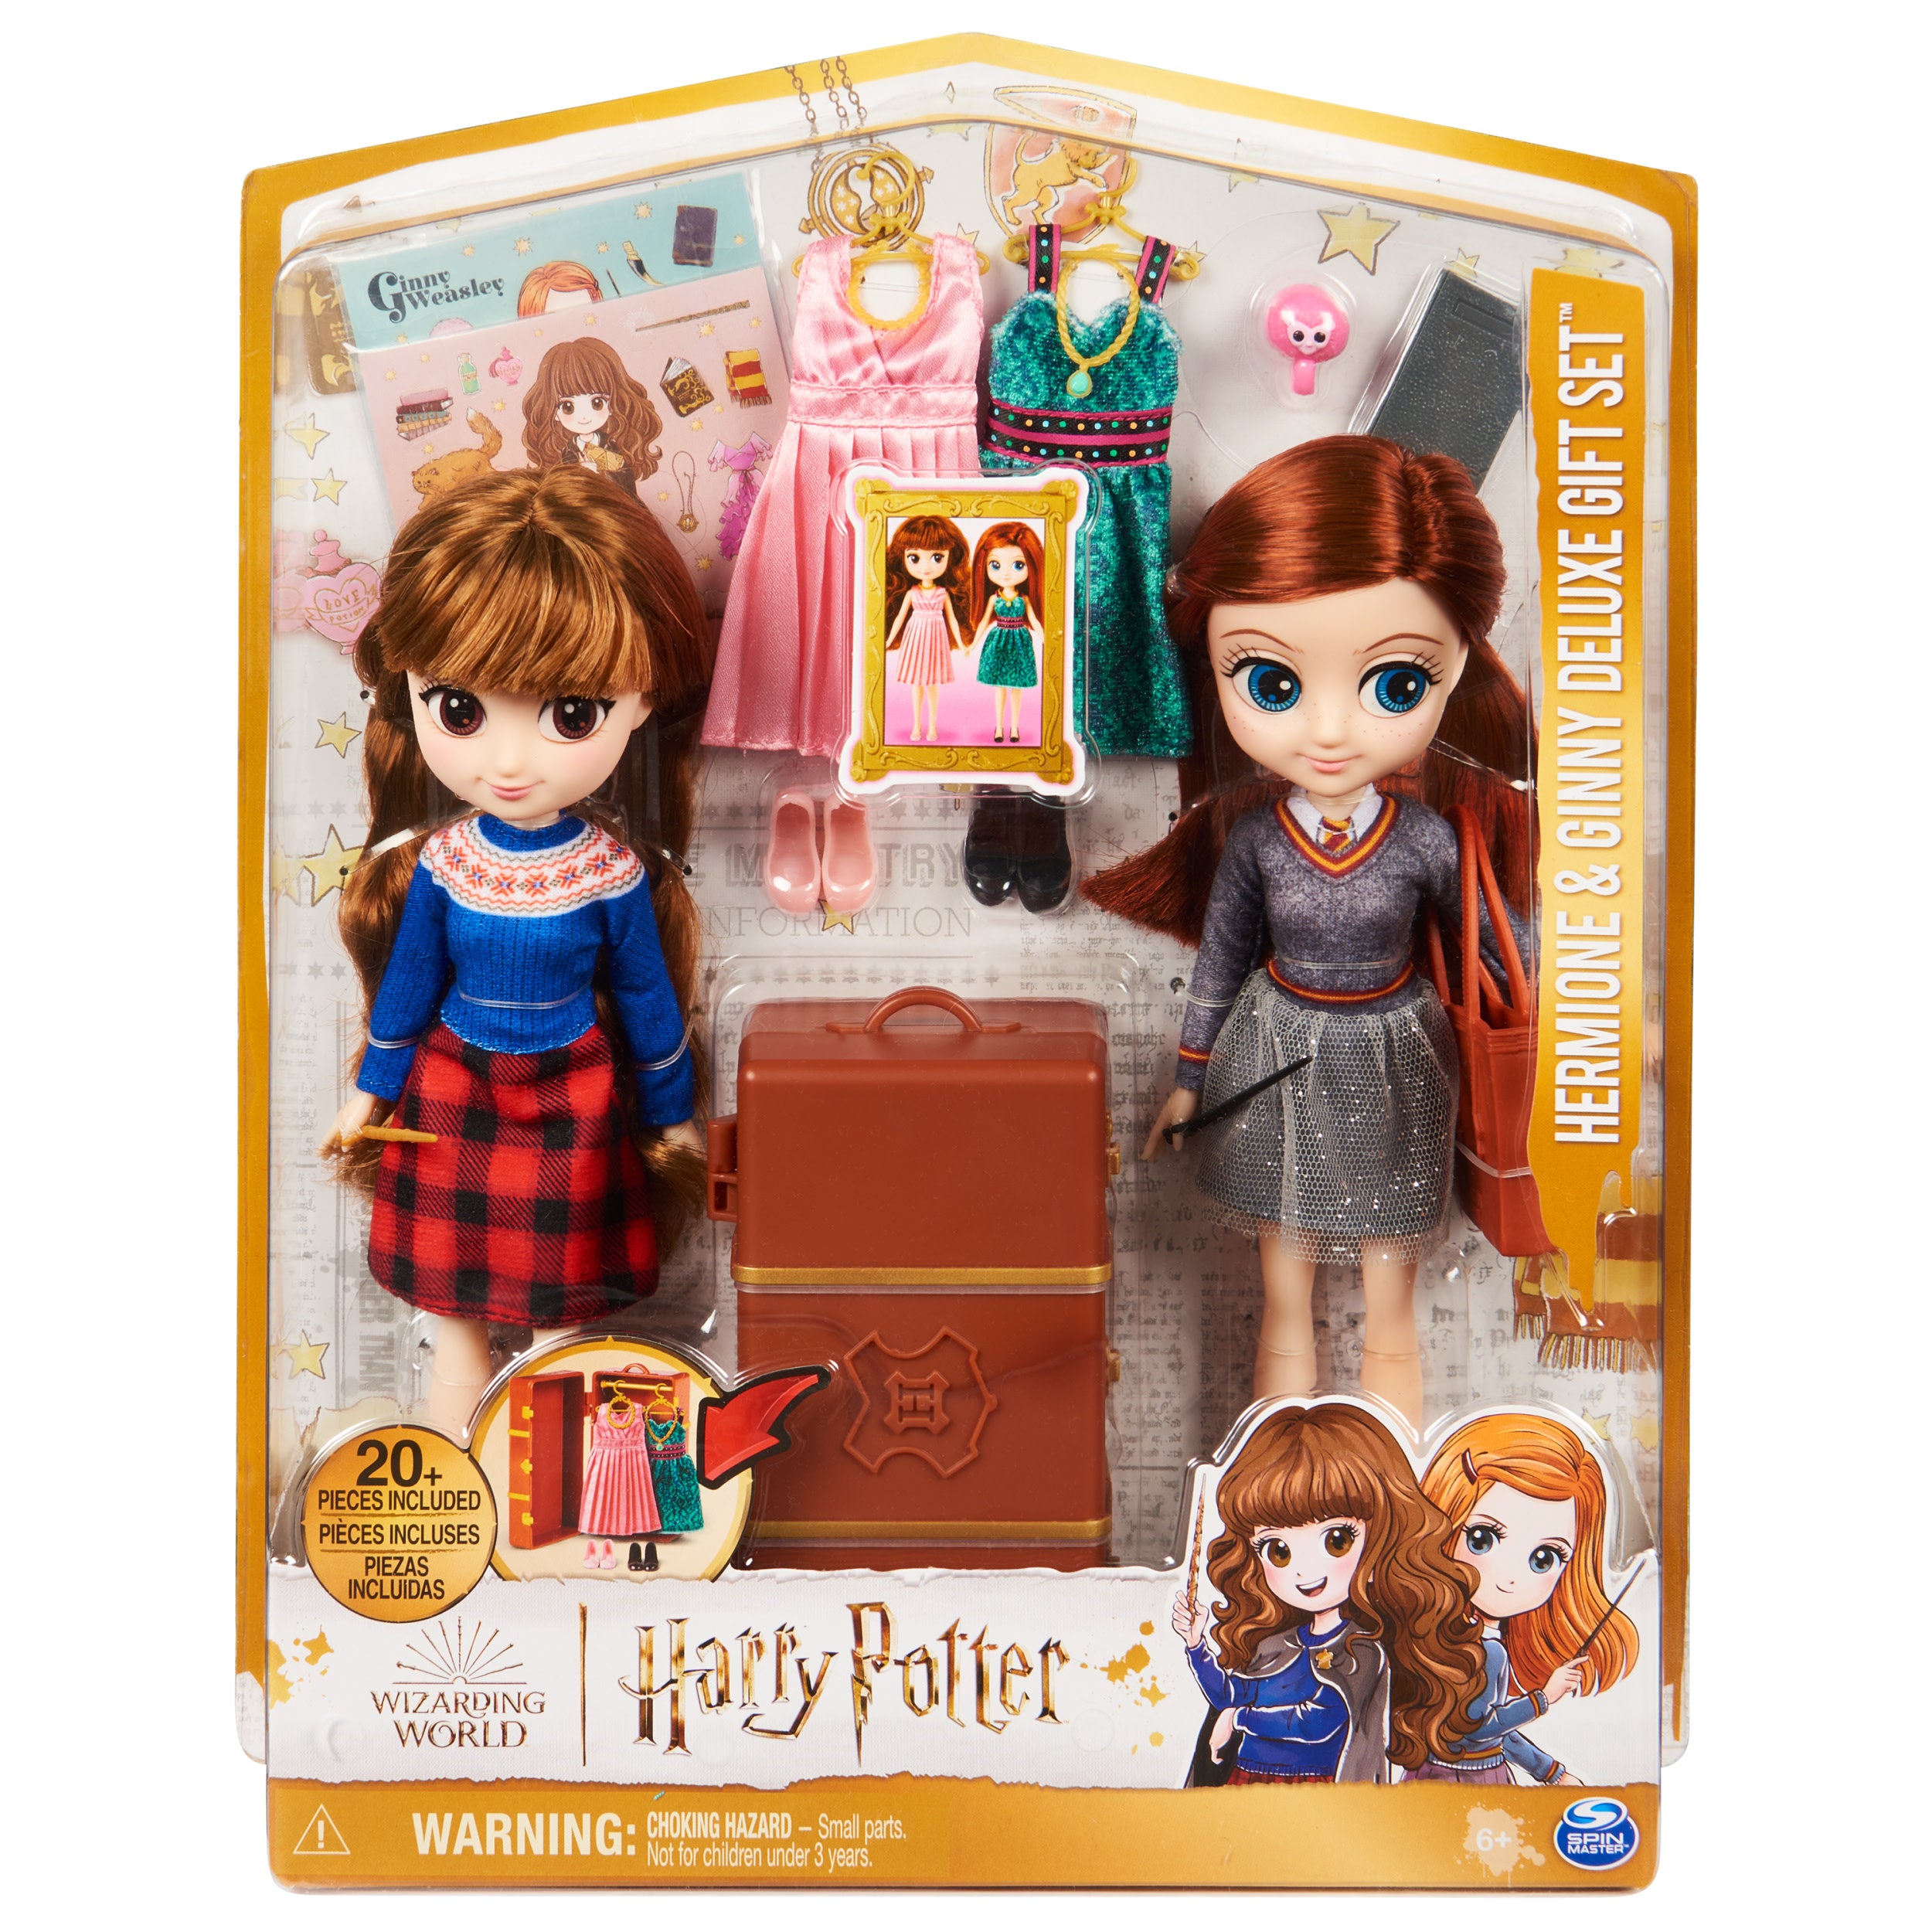 Wizarding World: Harry Potter - Set De Muñecas De Hermione Y Ginny 8 Pulgadas